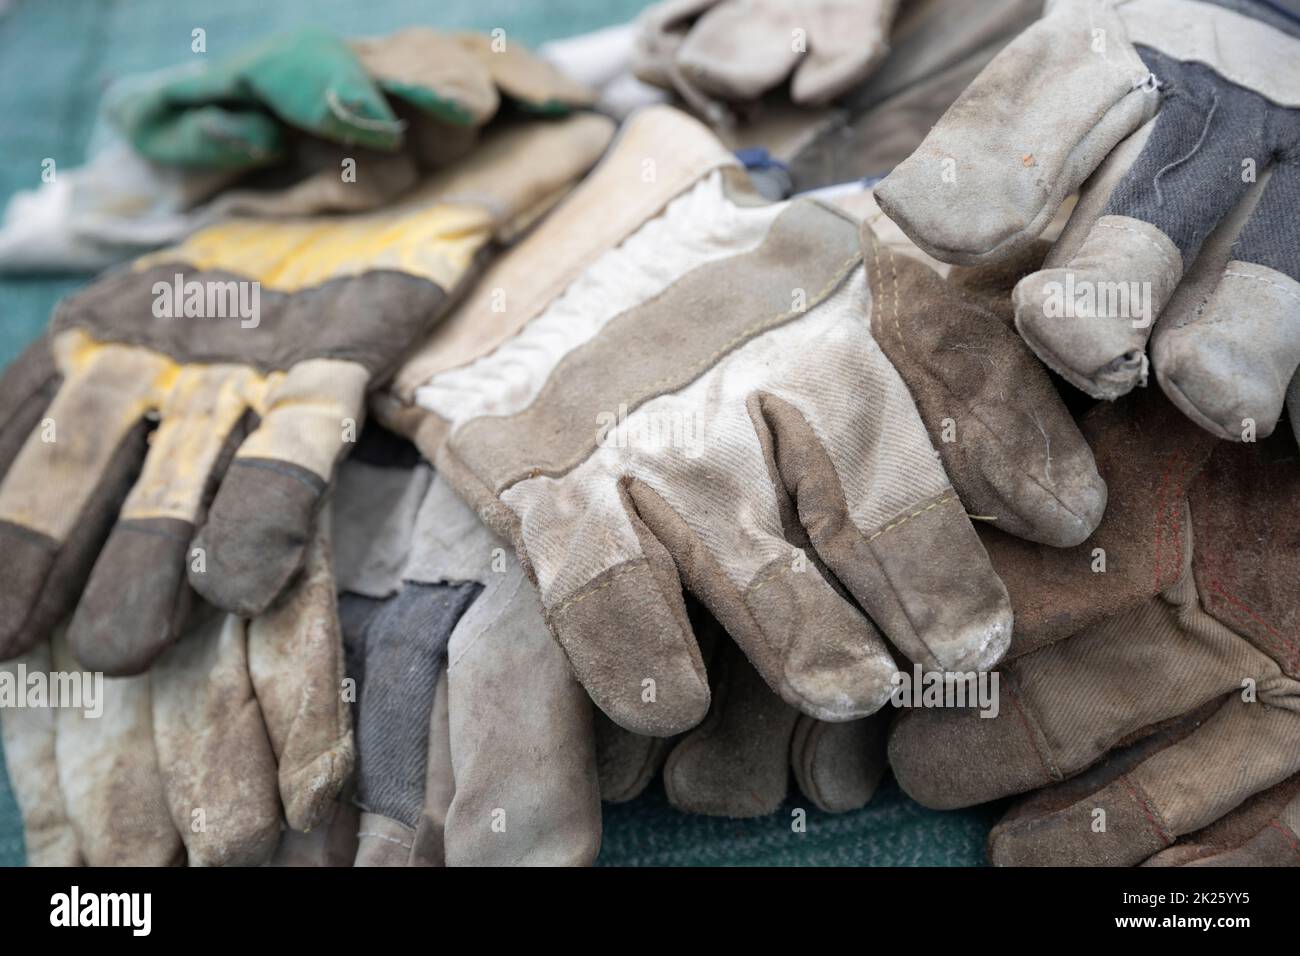 Pile of old gardener's gloves Stock Photo